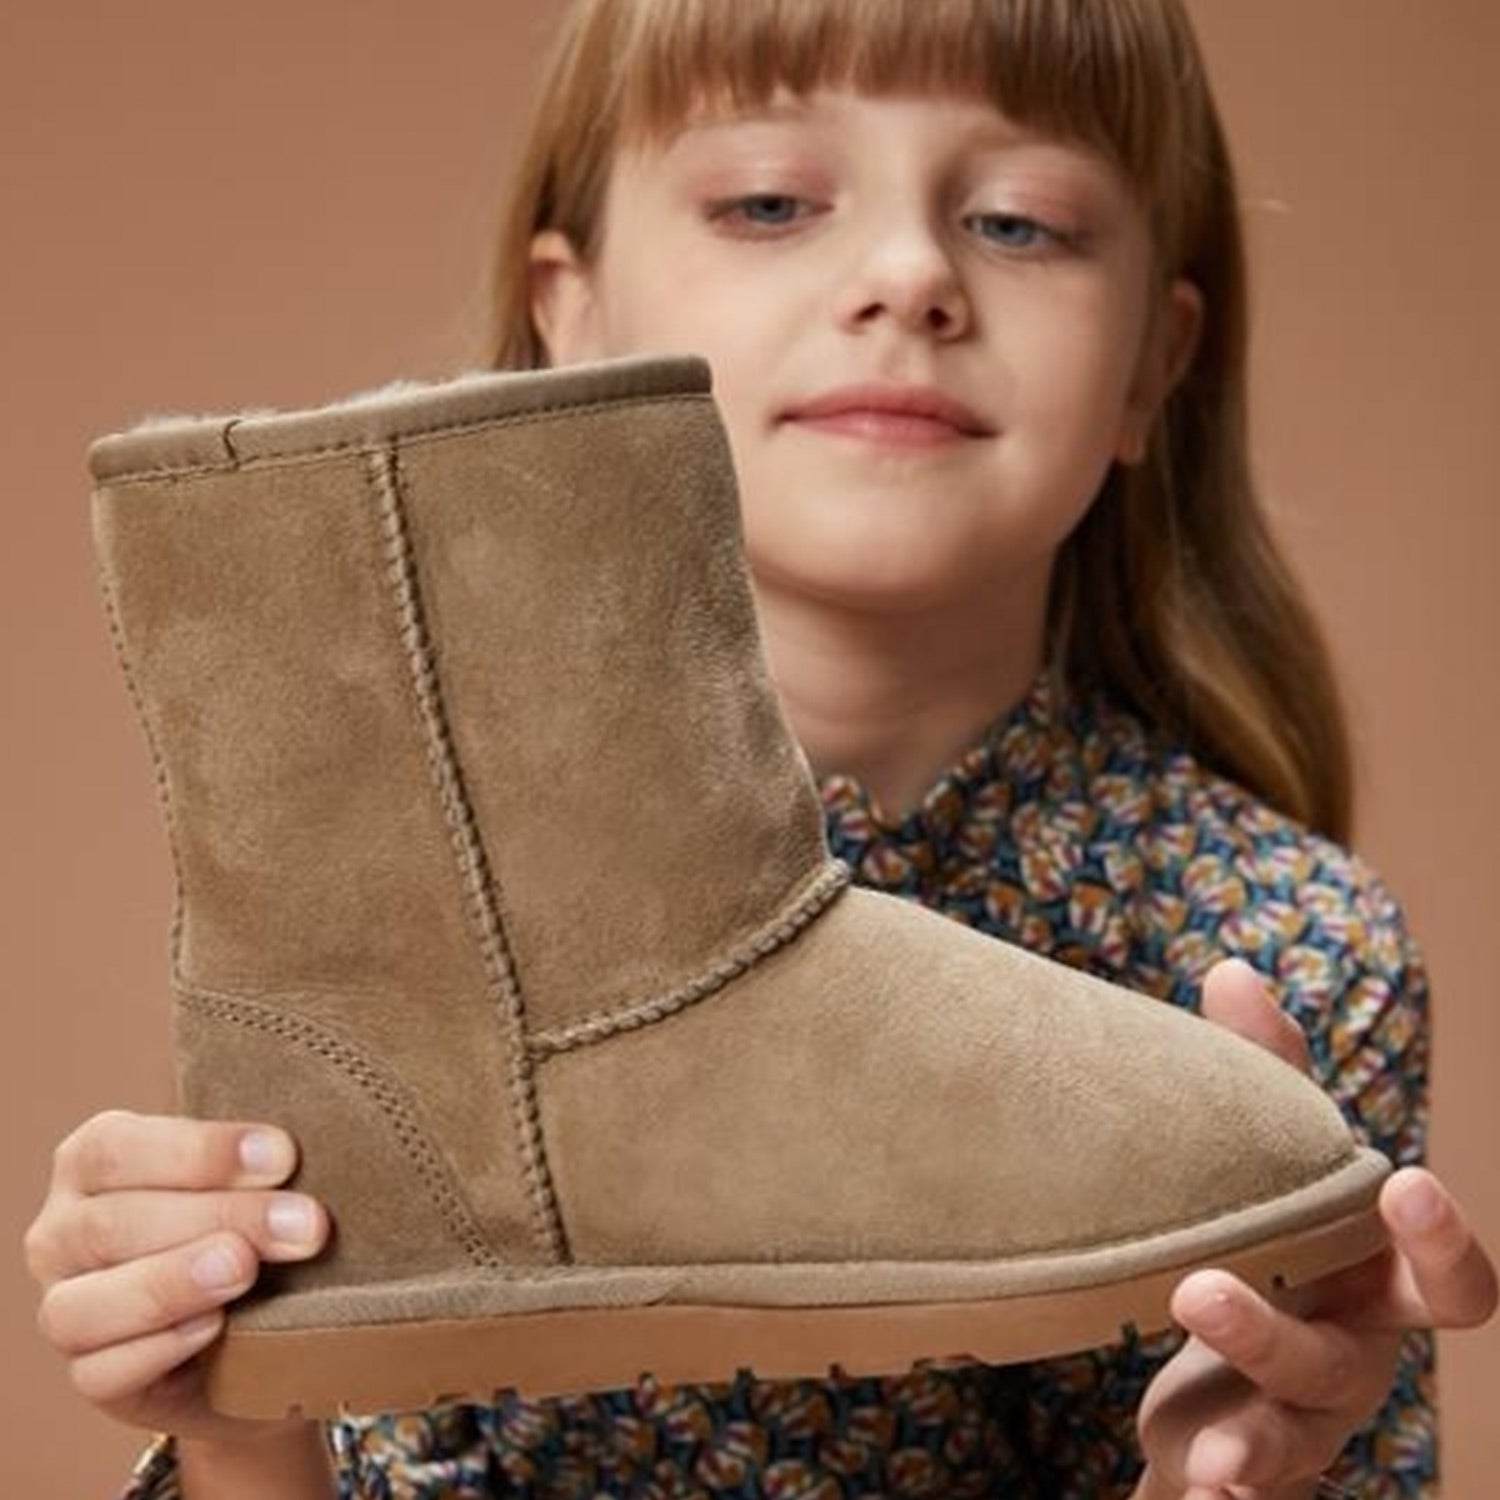 Australian Girl Model Holding a UGG Boot